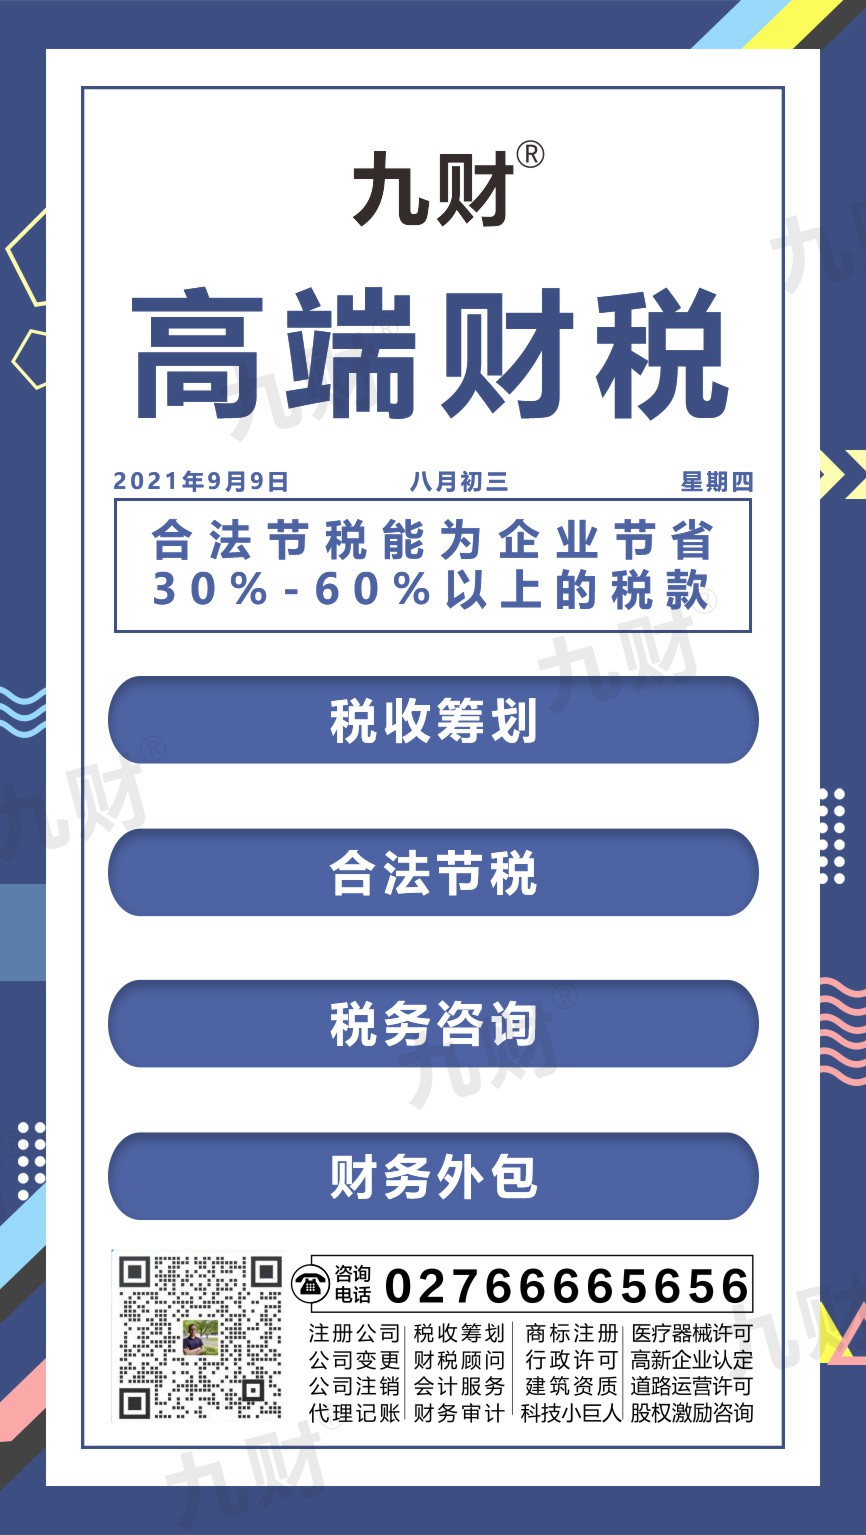 武汉武汉东湖区股东变更网上如何填写资料申请